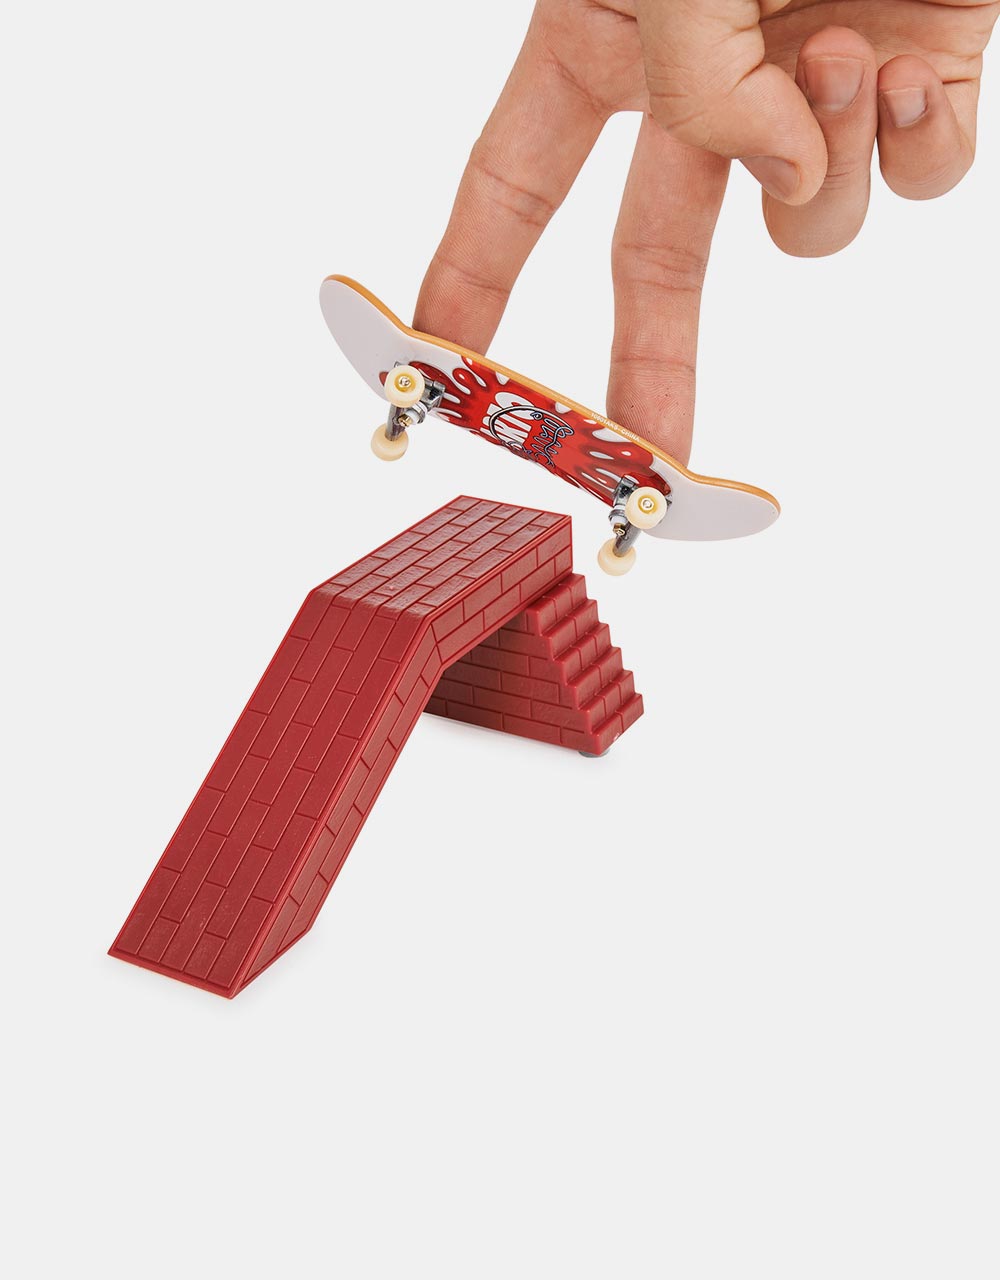 Tech Deck Fingerboard VS Series - Flip